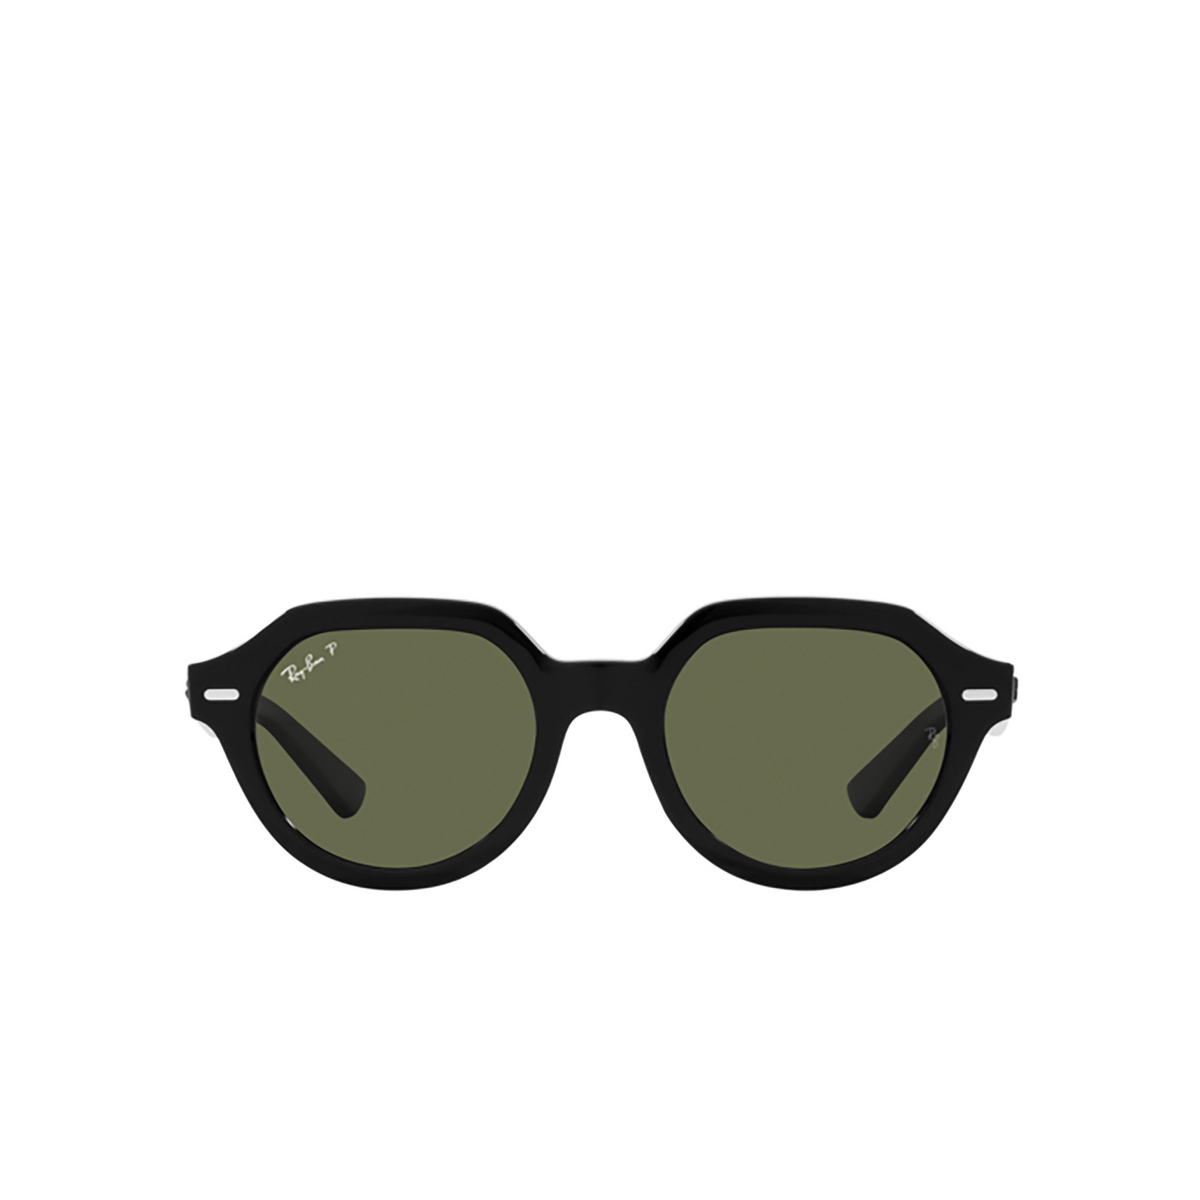 Ray-Ban GINA Sunglasses 901/58 Black - front view